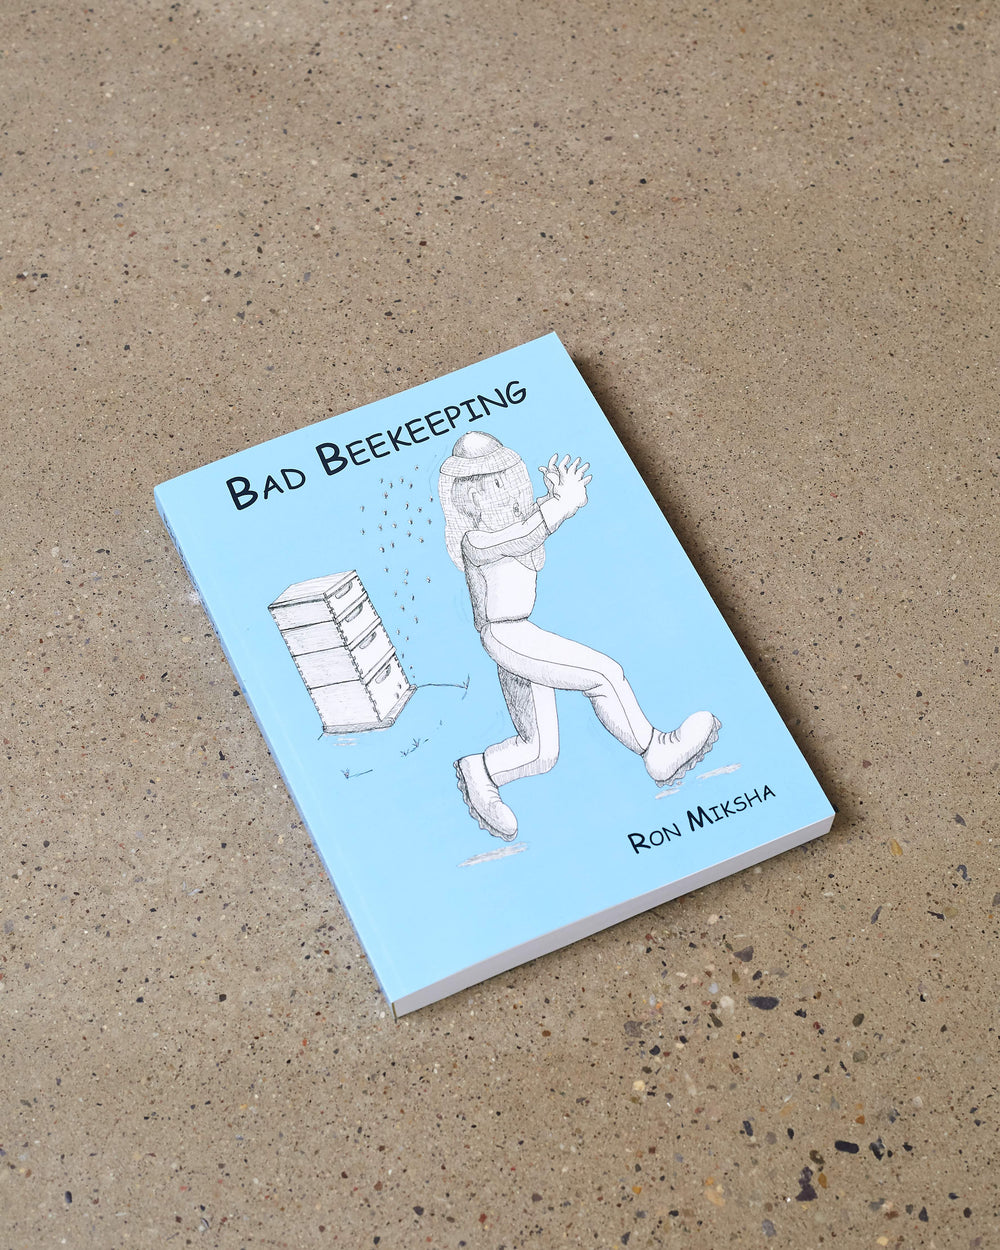 Bad Beekeeping by Ron Miksha